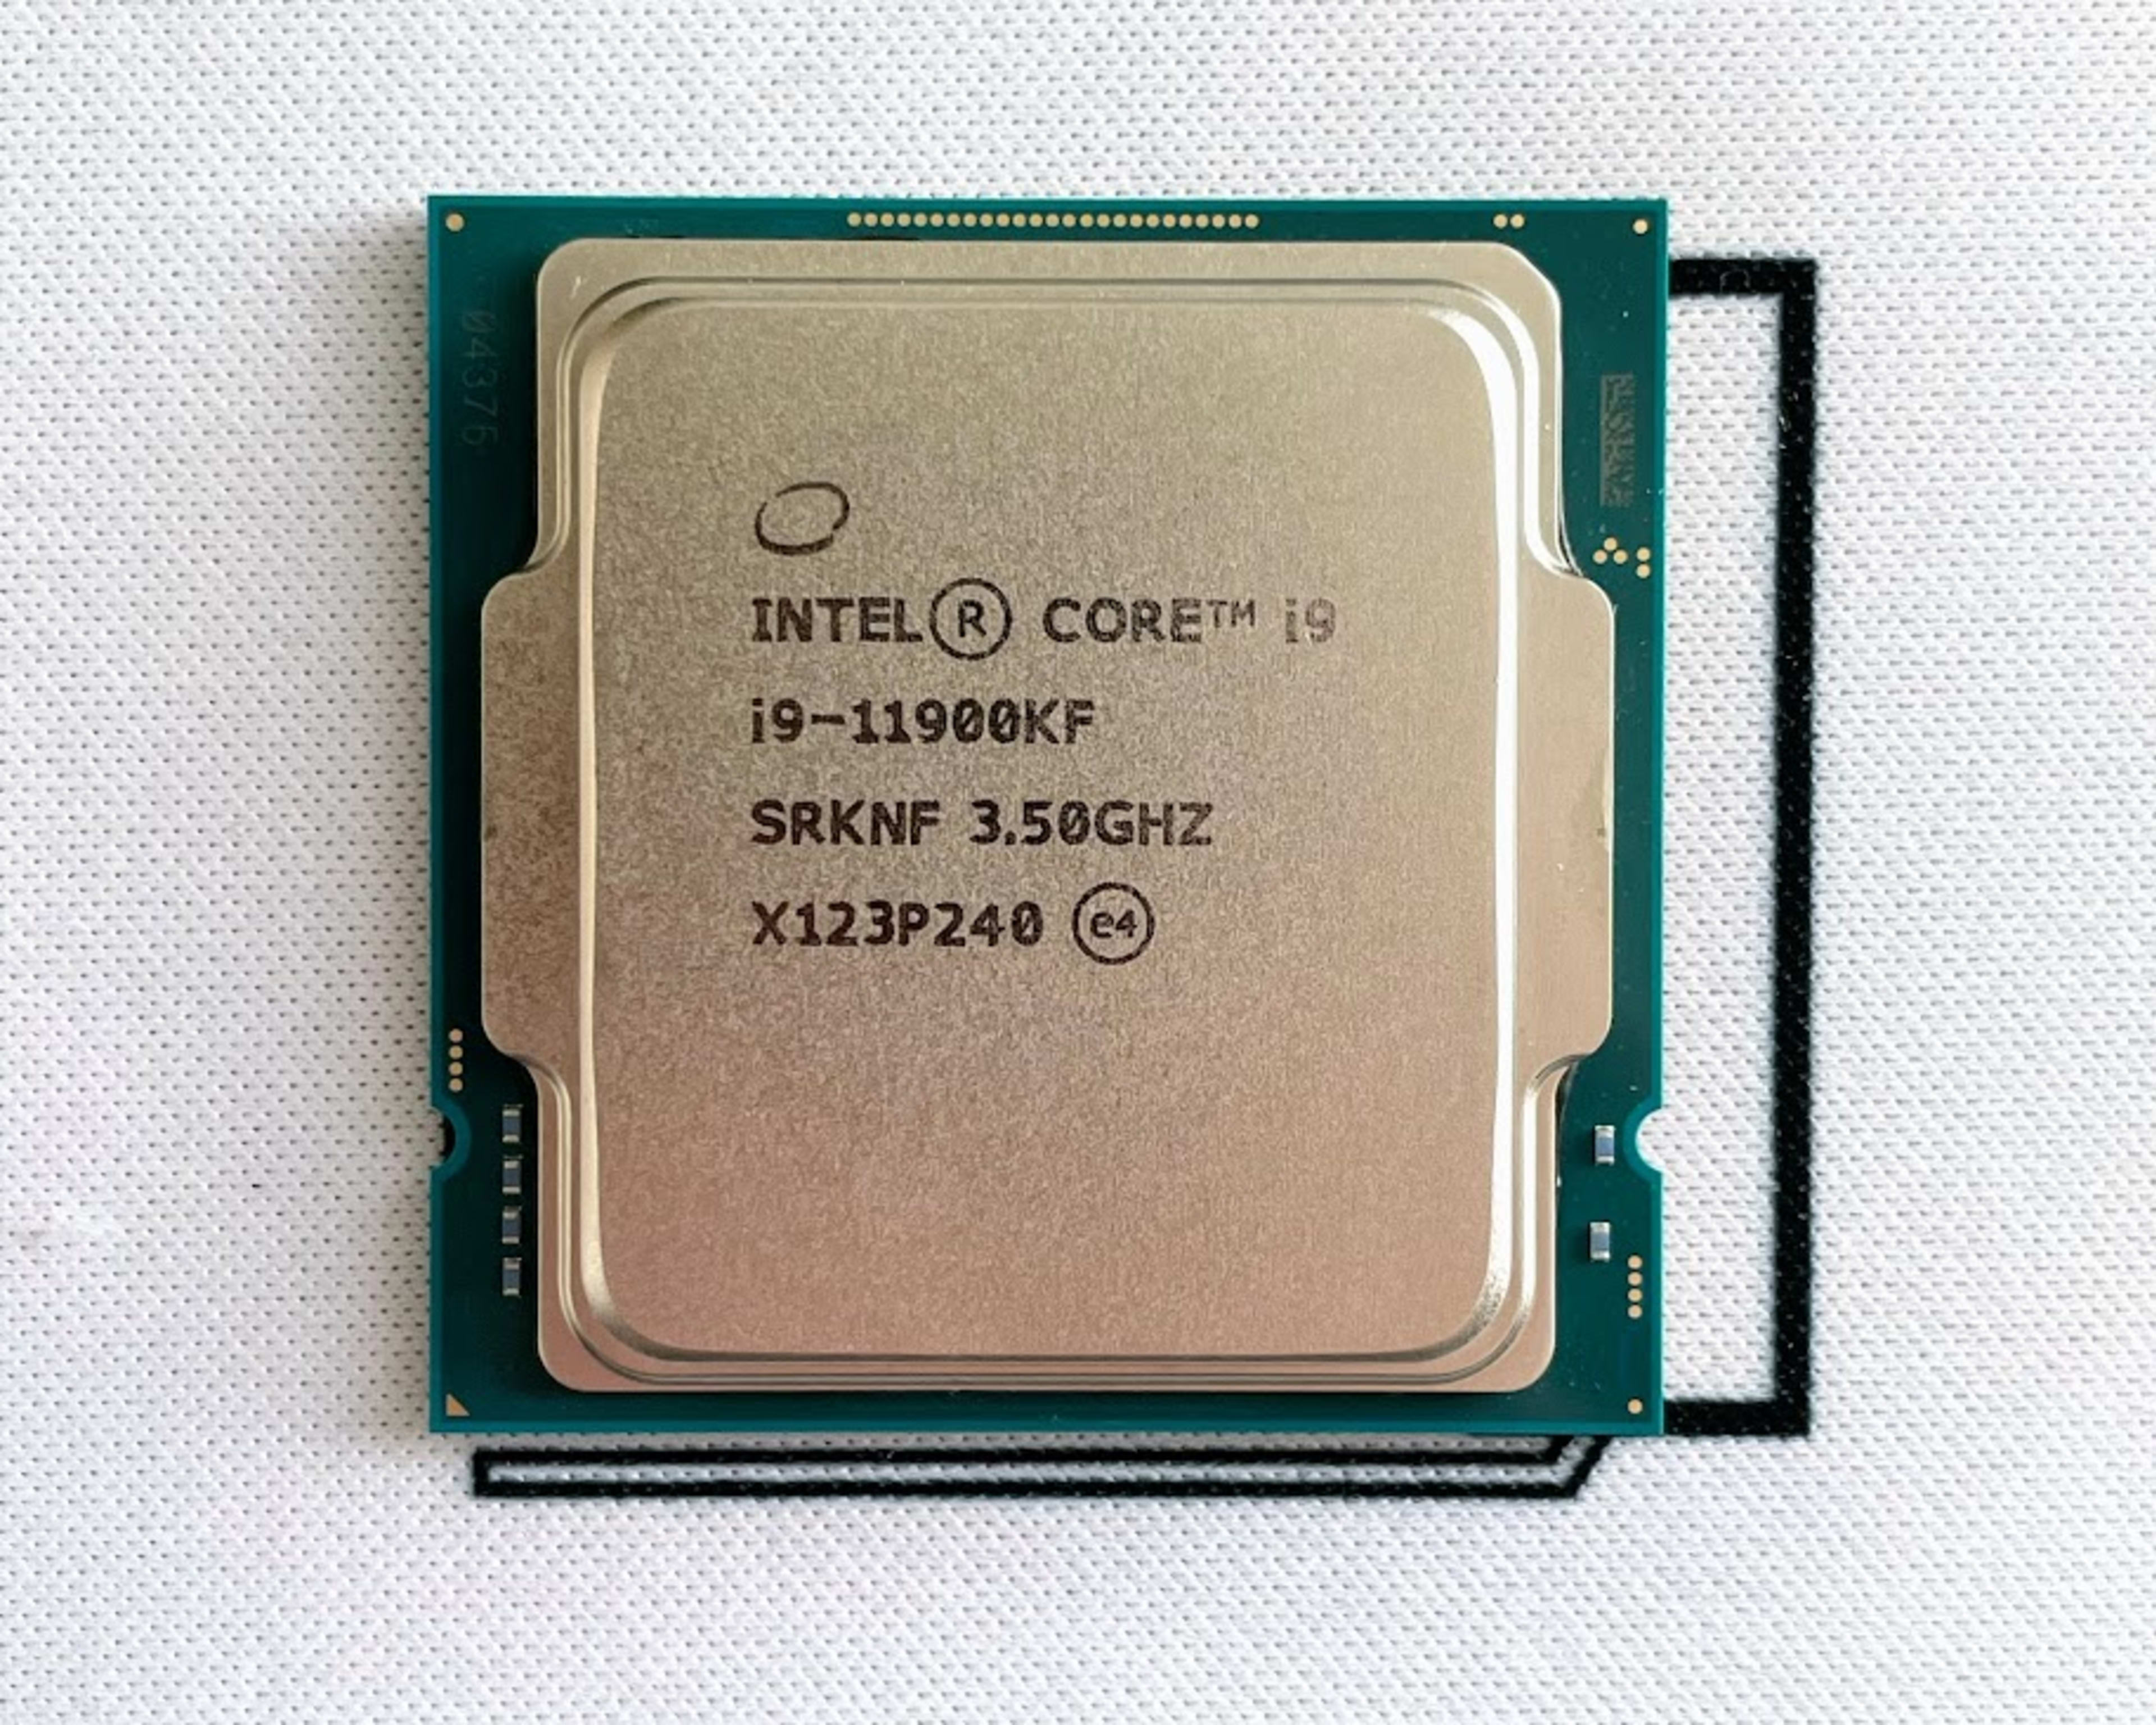 Intel® Core™ i7-11700K price $250.00 in Veal Vong, Prampir Meakkakra, Phnom  Penh, Cambodia - GTC Computer